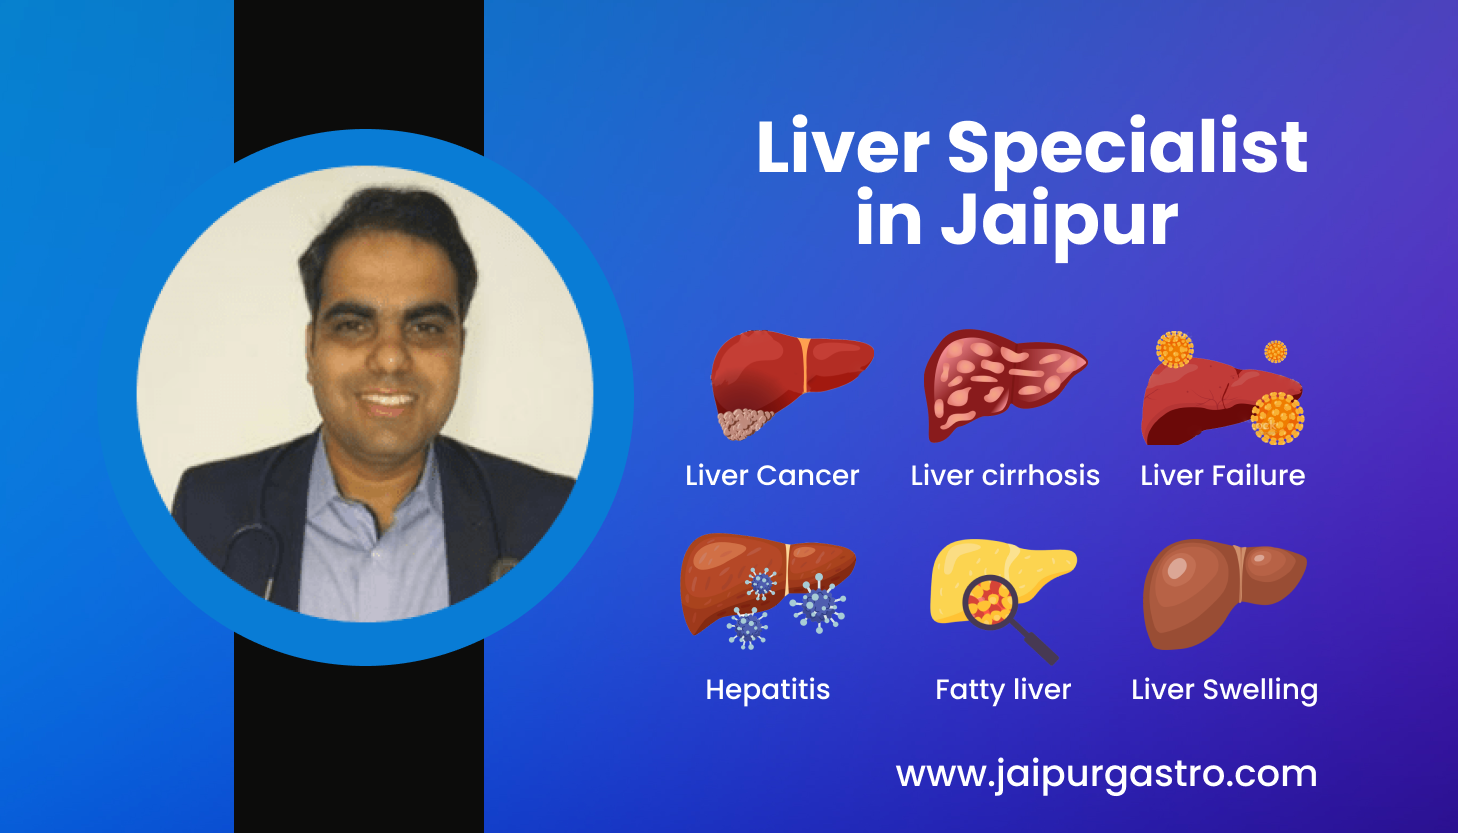 Liver Specialist in Jaipur - Liver Doctor | Dr. Shankar Dhaka